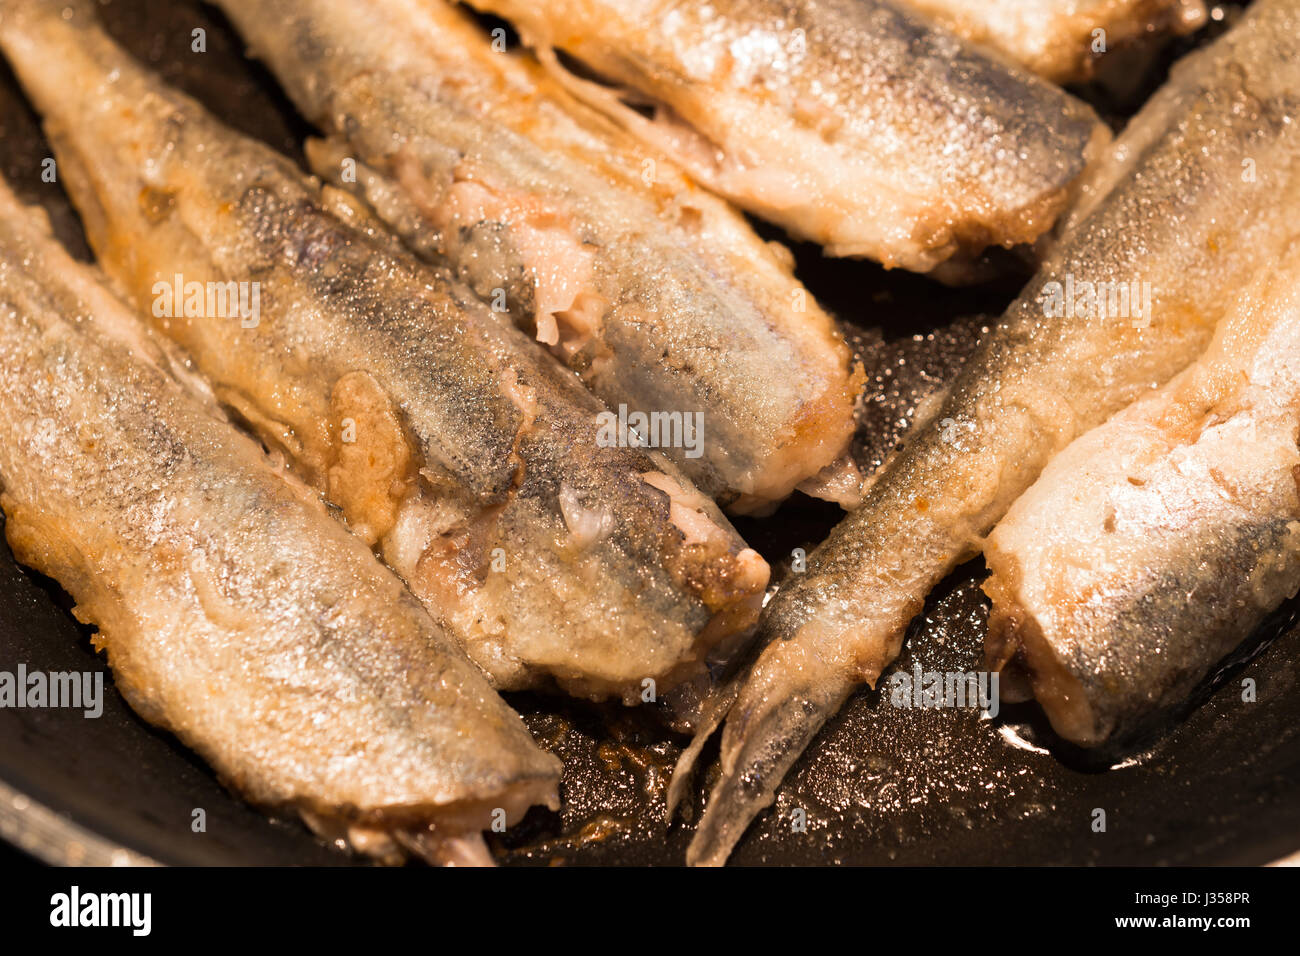 Les petits paniers de poissons sauvages d'or dans les rangées, frit dans une casserole, recouvert d'une délicieuse croûte dorée. La friture de poissons - une excellente alimentation nutritive Banque D'Images